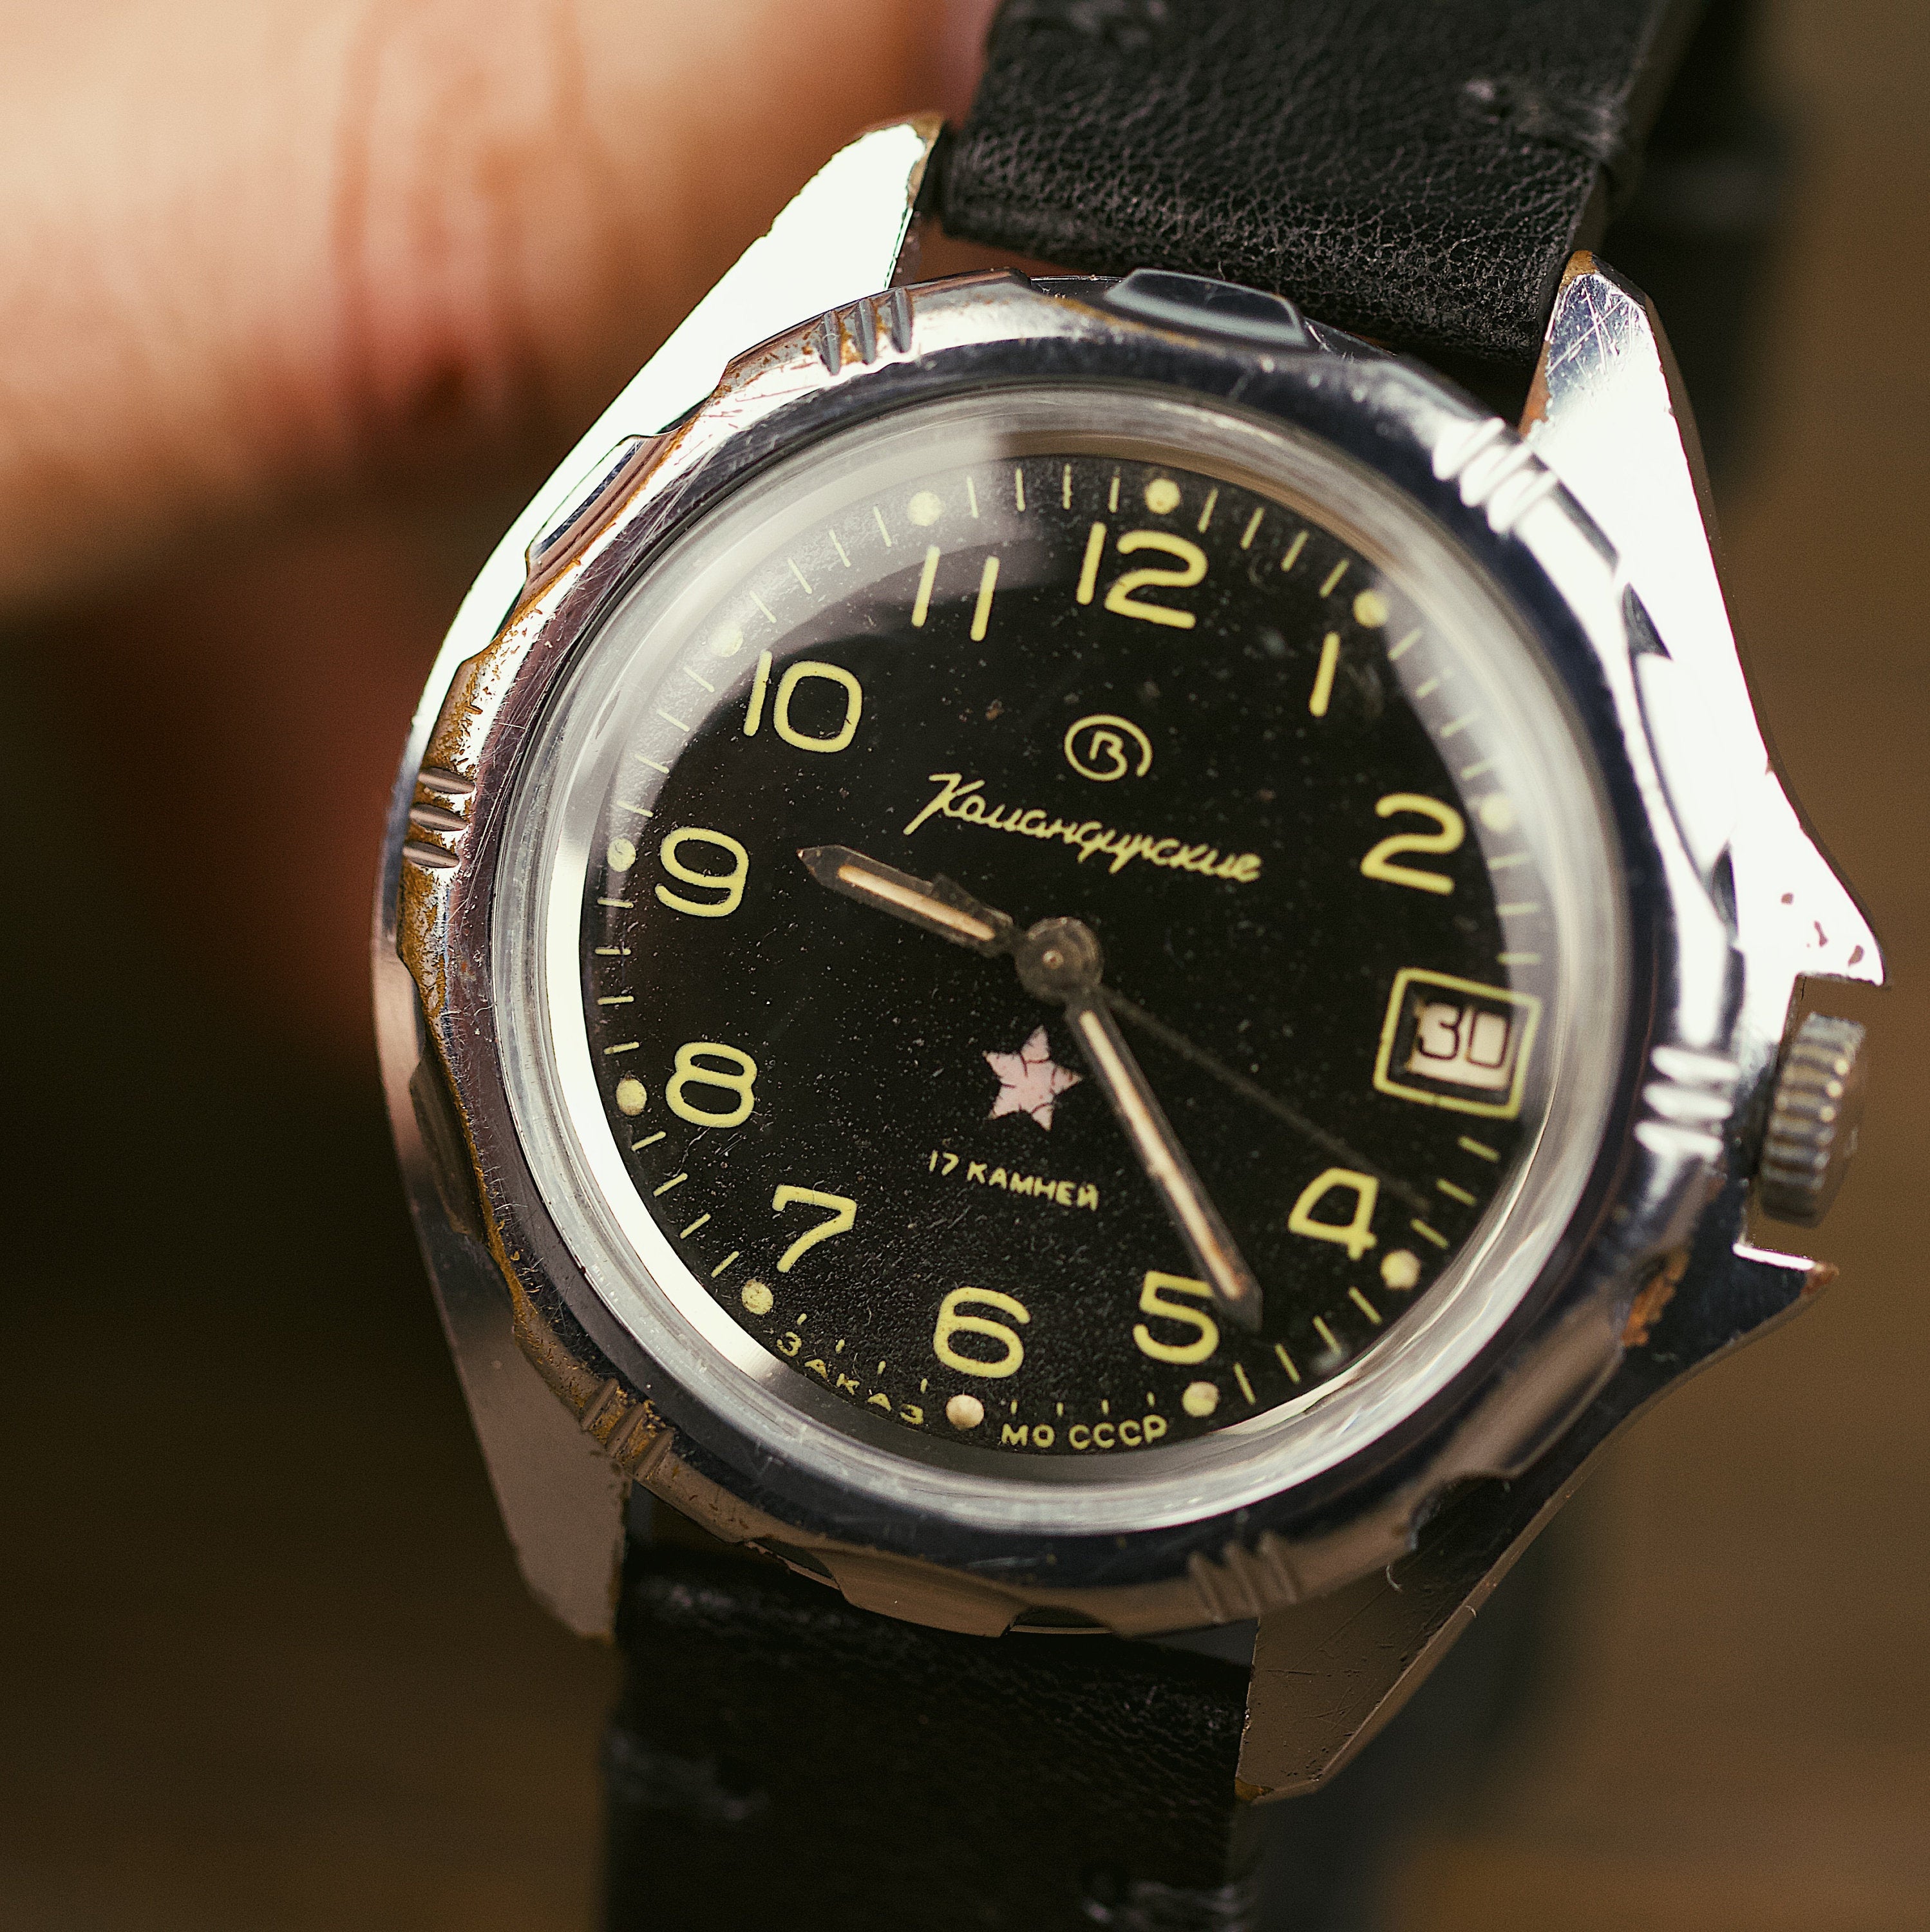 Soviet vintage men's wrist watch for men VOSTOK - Komandirskie with leather nato strap